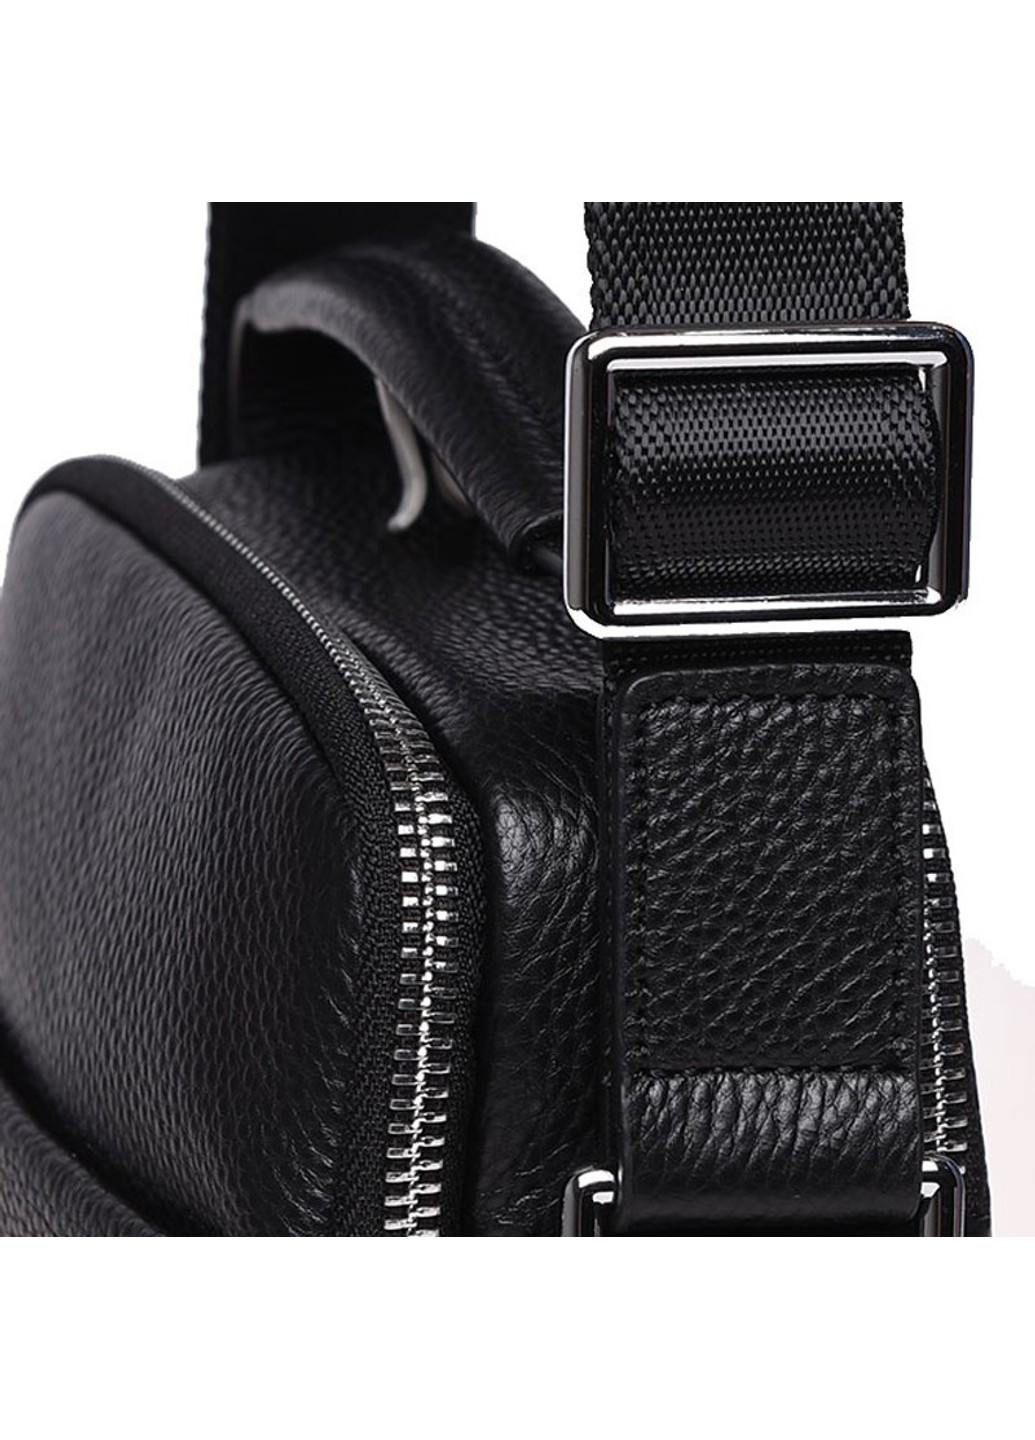 Мужская кожаная сумка K16406a-black Ricco Grande (271665107)